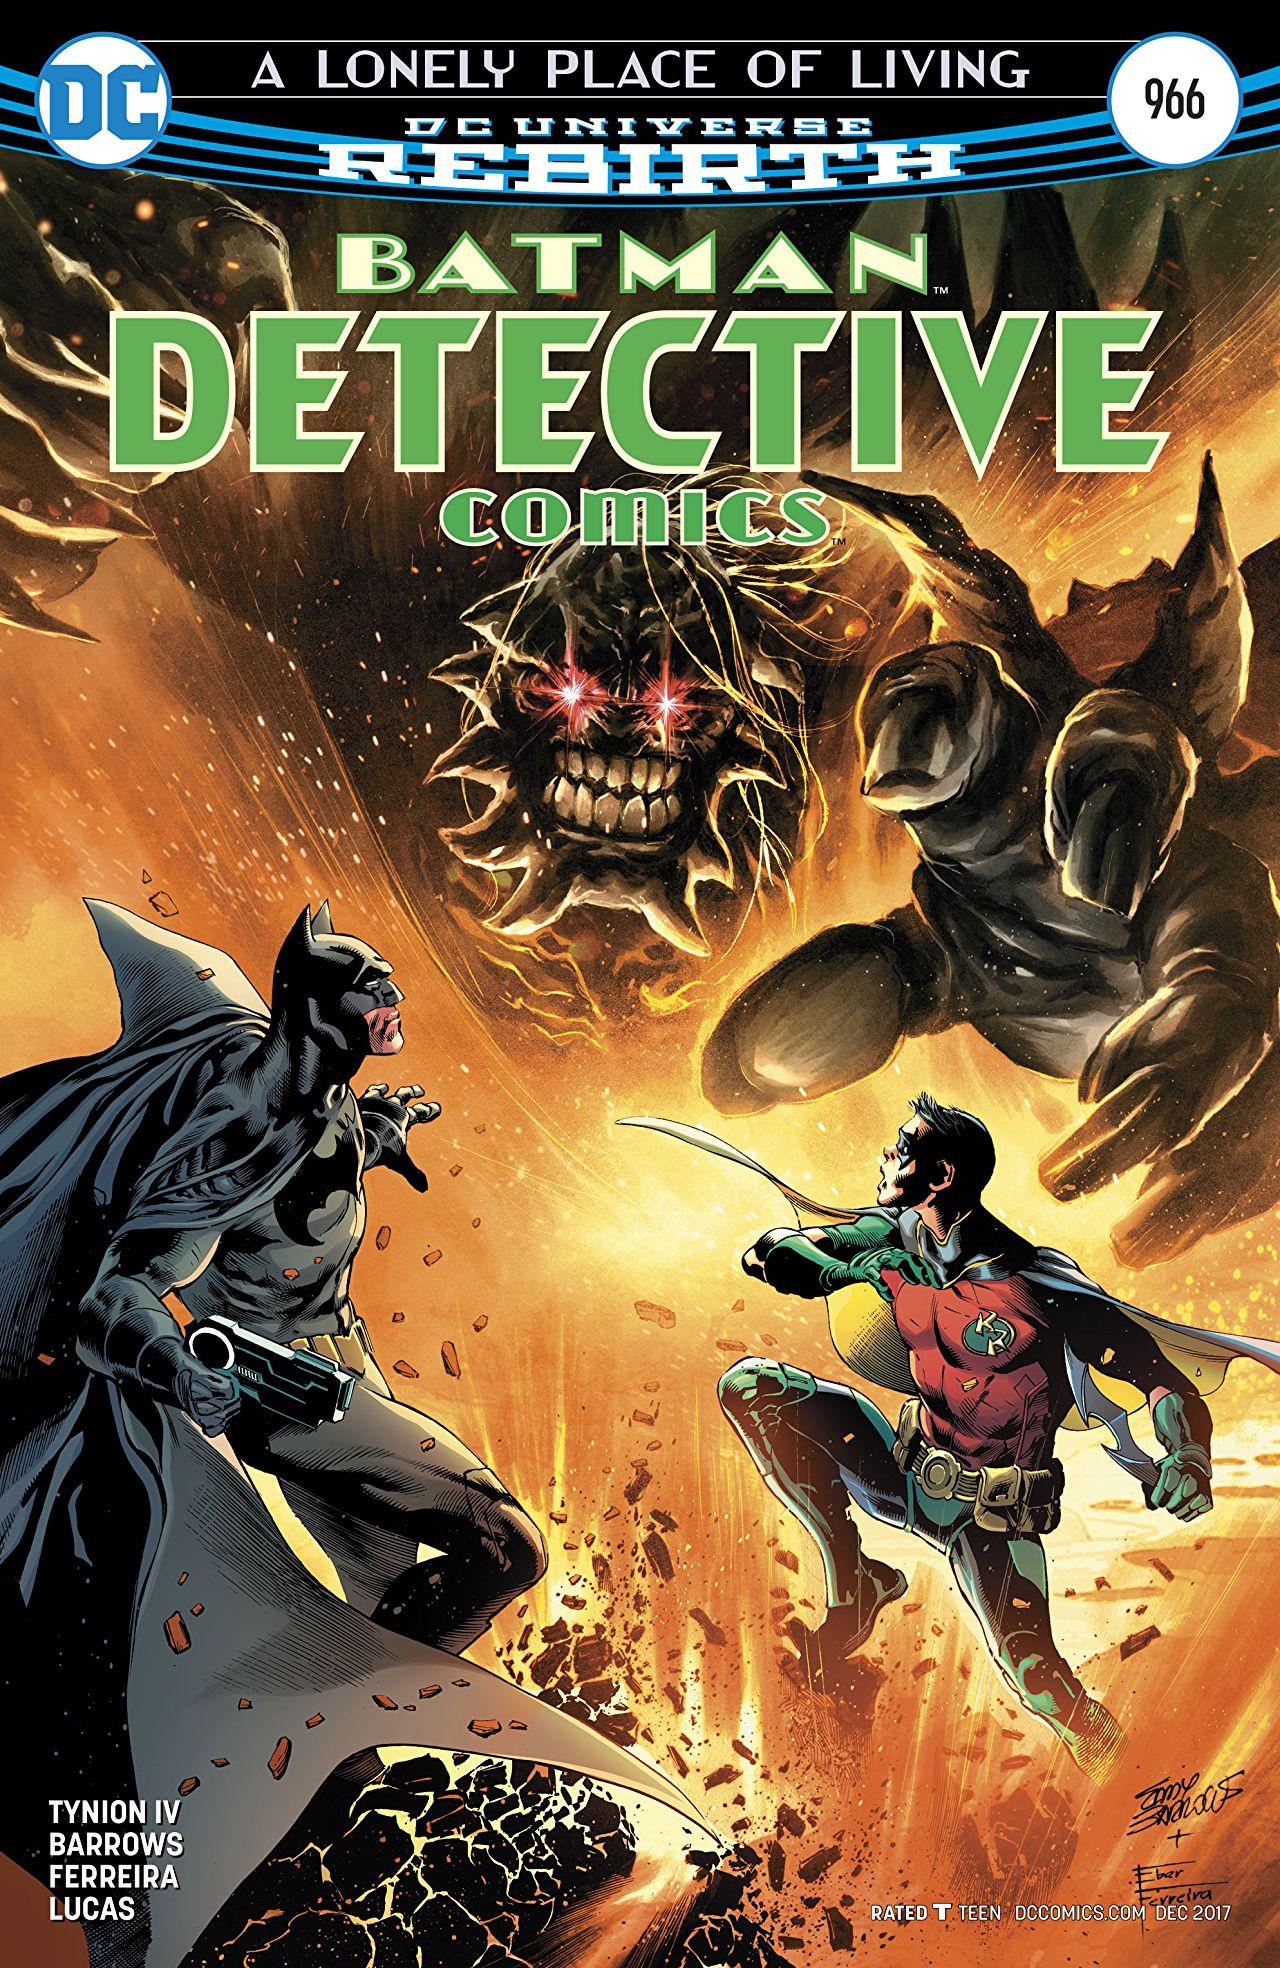 Detective Comics Vol. 1 #966